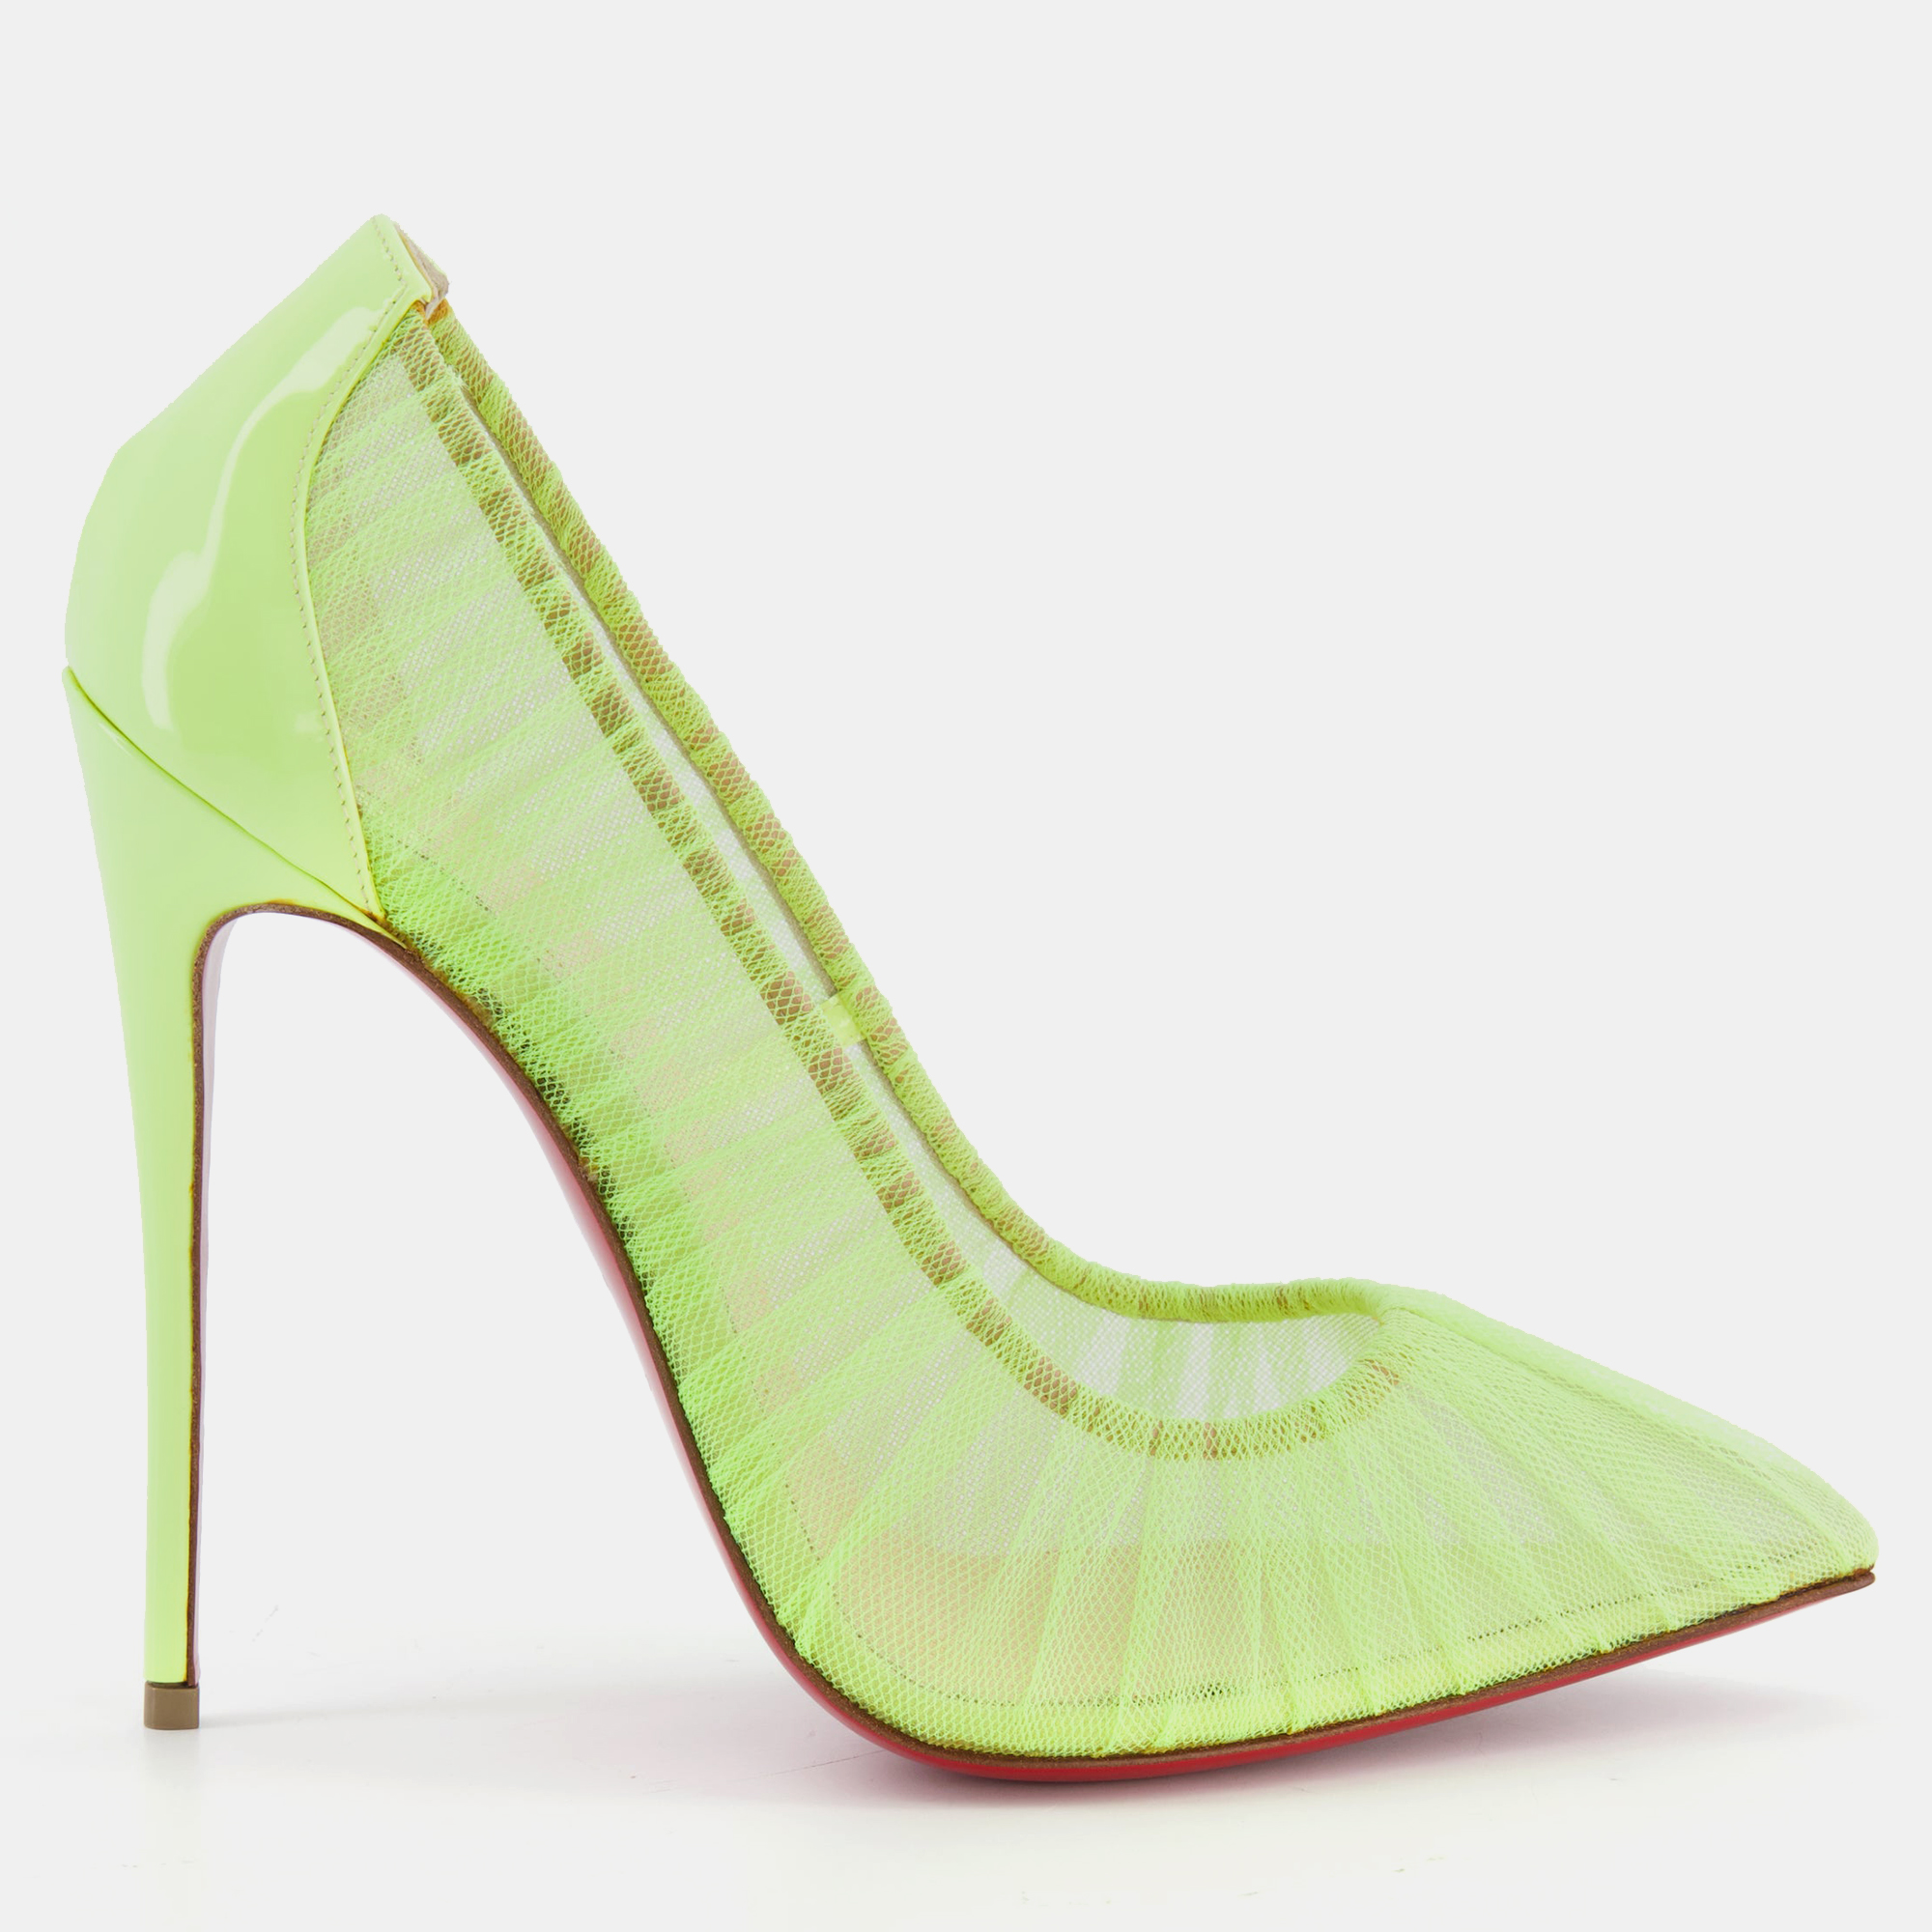 Christian louboutin neon yellow mesh pump heels size eu 38.5